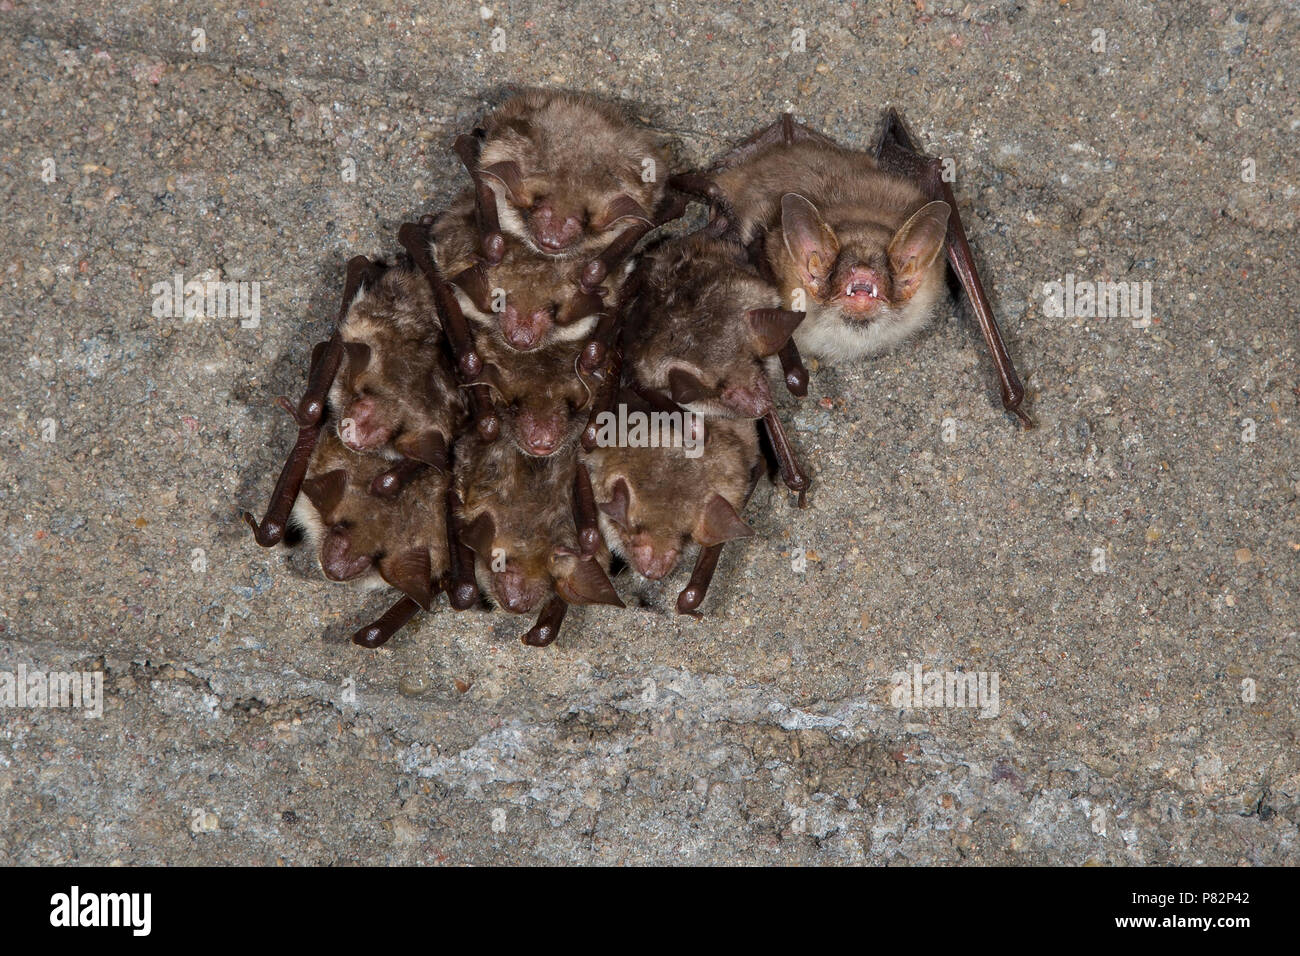 Vale vleermuizen in winterslaap, Greater Mouse Eared Bats in hibernation Stock Photo